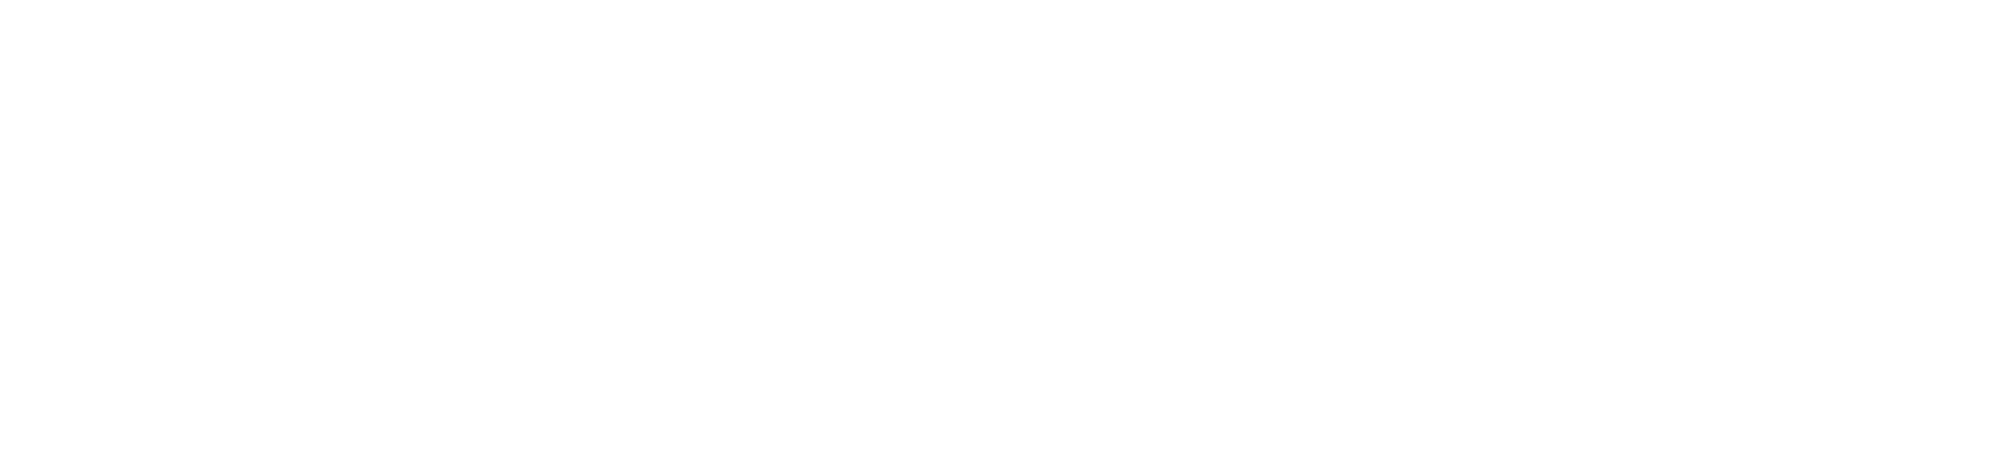 Iris galerie logo